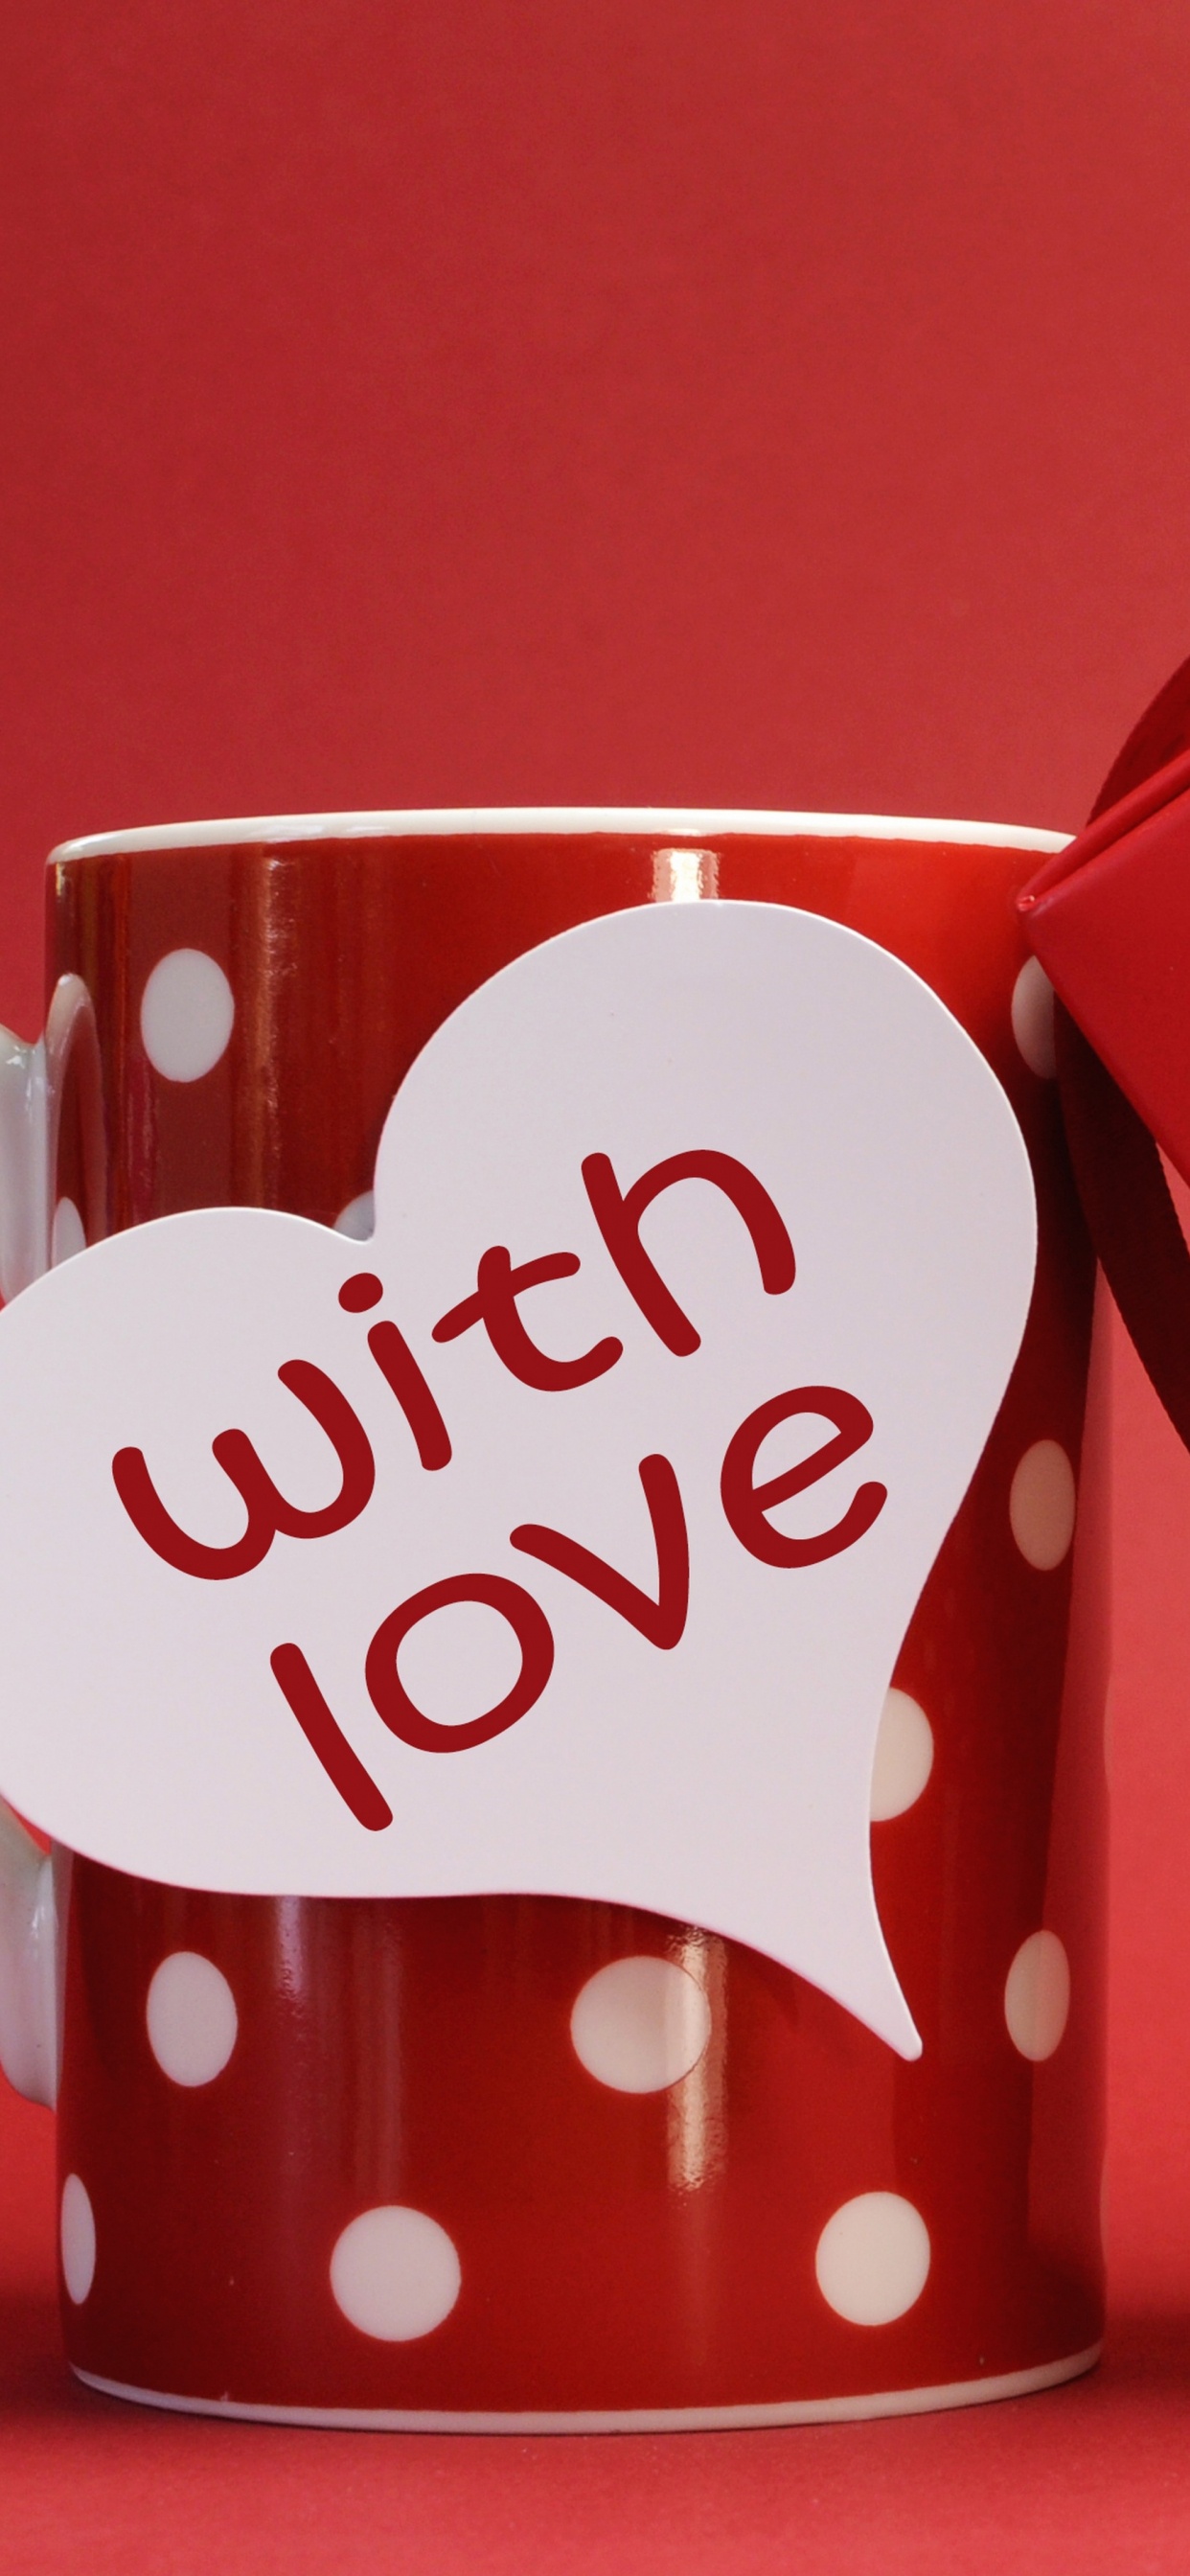 浪漫, 心脏, 爱情, 咖啡杯, 假日 壁纸 1242x2688 允许